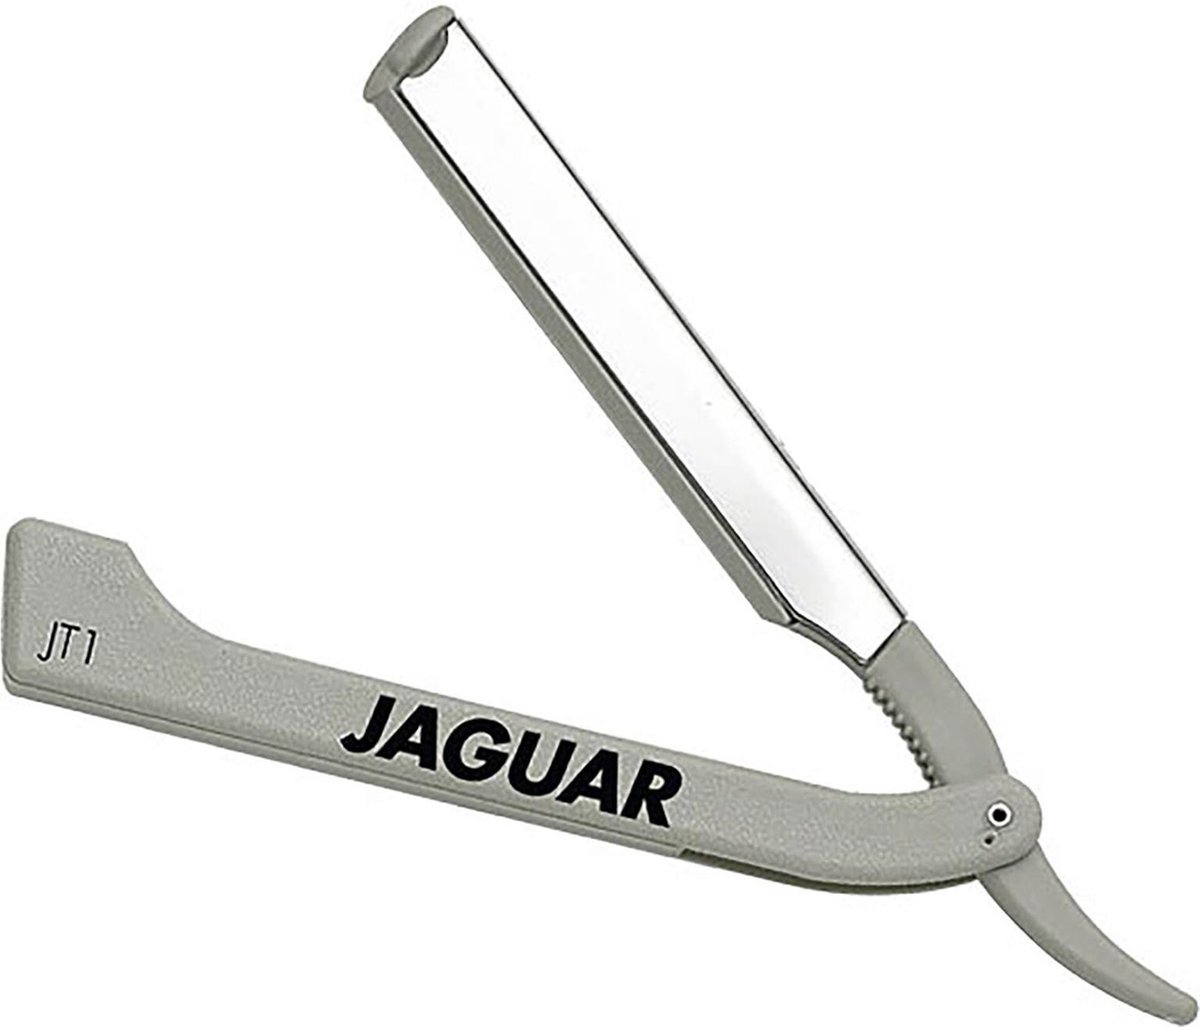 vervorming identificatie Toelating Jaguar - JT1 - Scheermes | bol.com